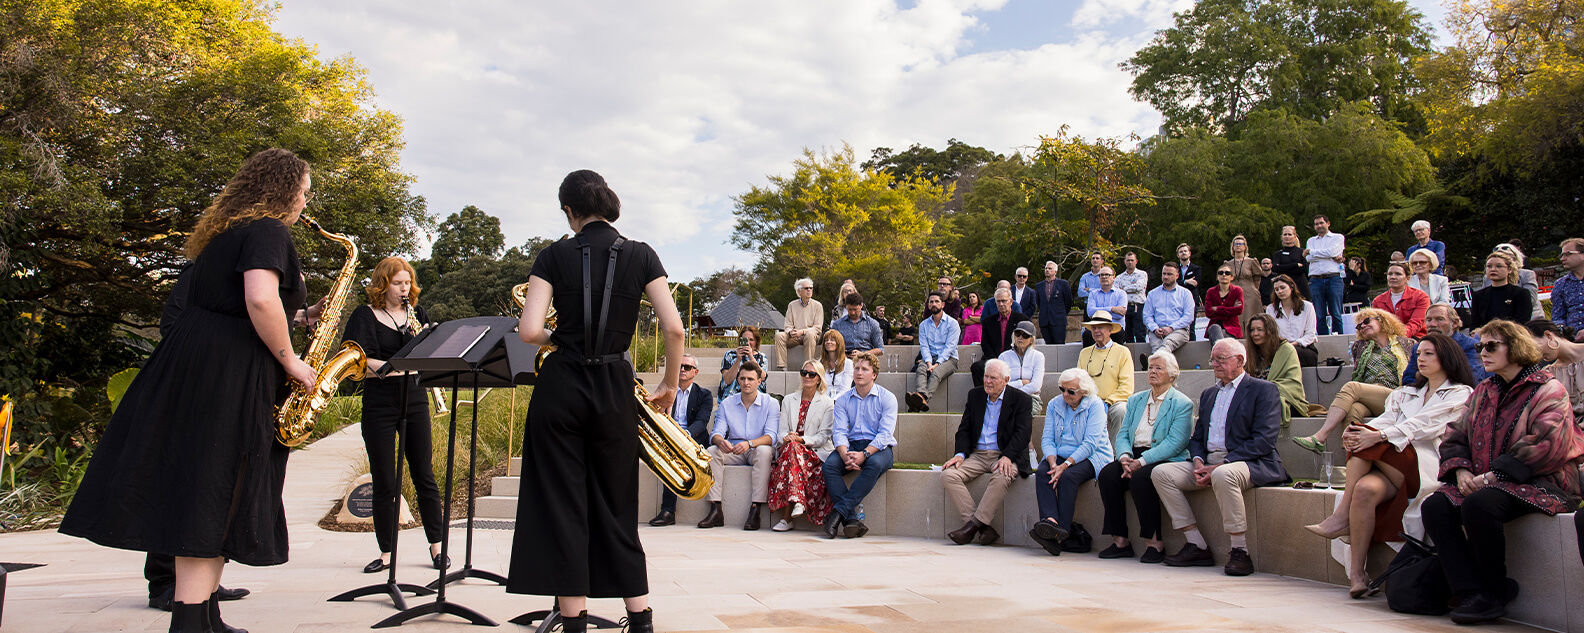 Saxophonists perform in amphitheatre in Garden